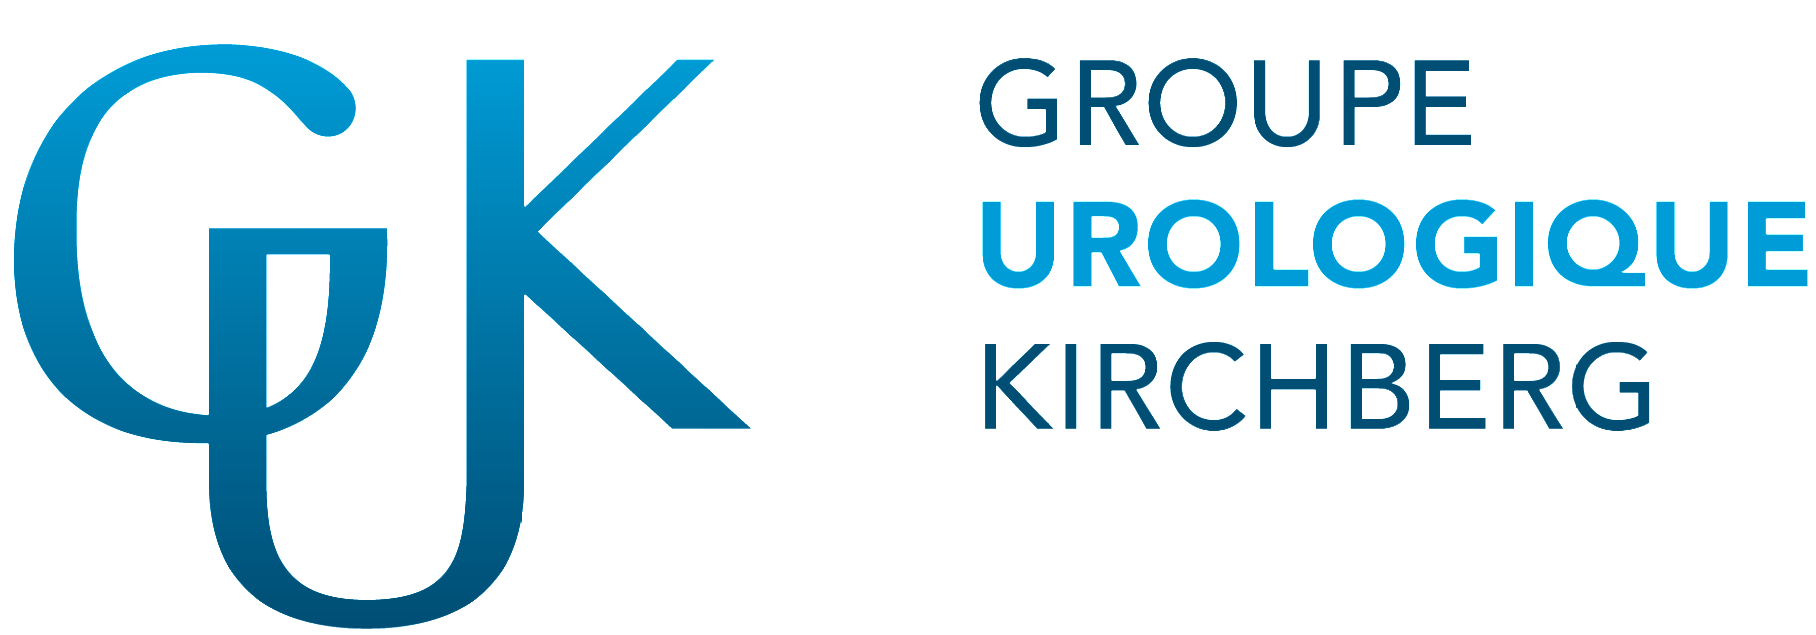 Groupe Urologique Kirchberg